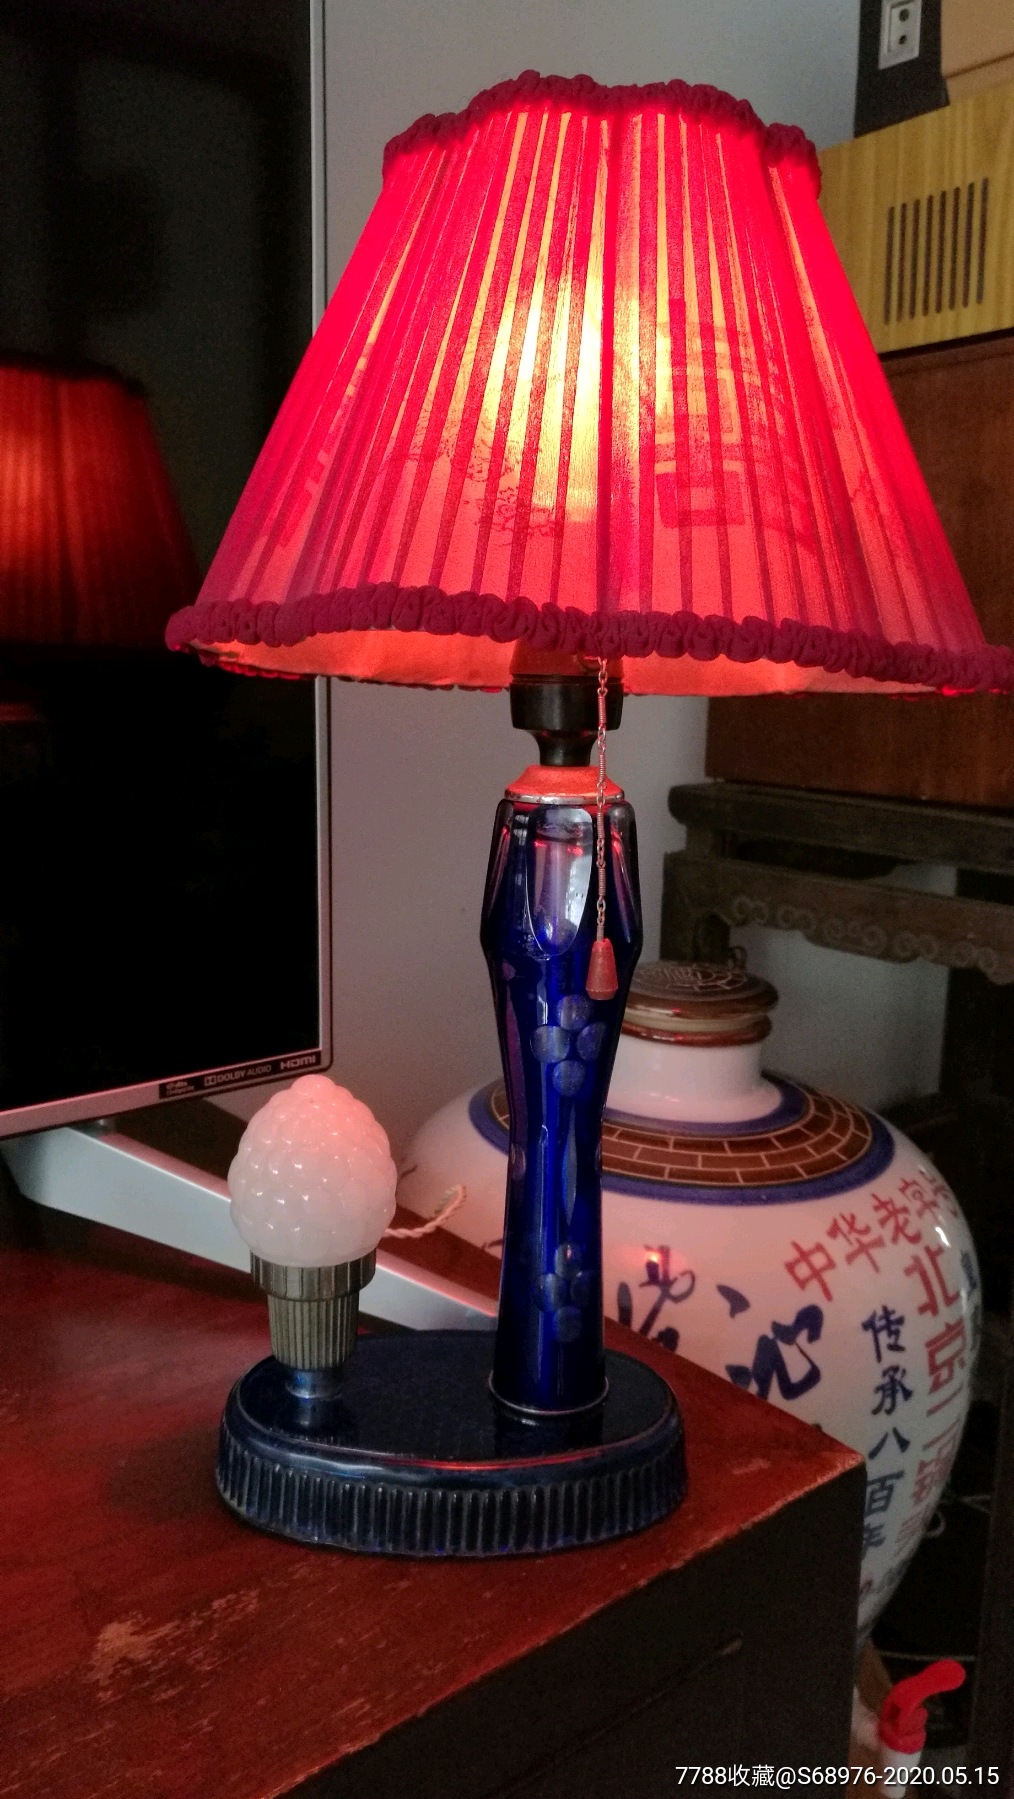 老台灯,6,70年代玻璃磨料座台灯带纱罩,使用正常,可用可藏,可做影视